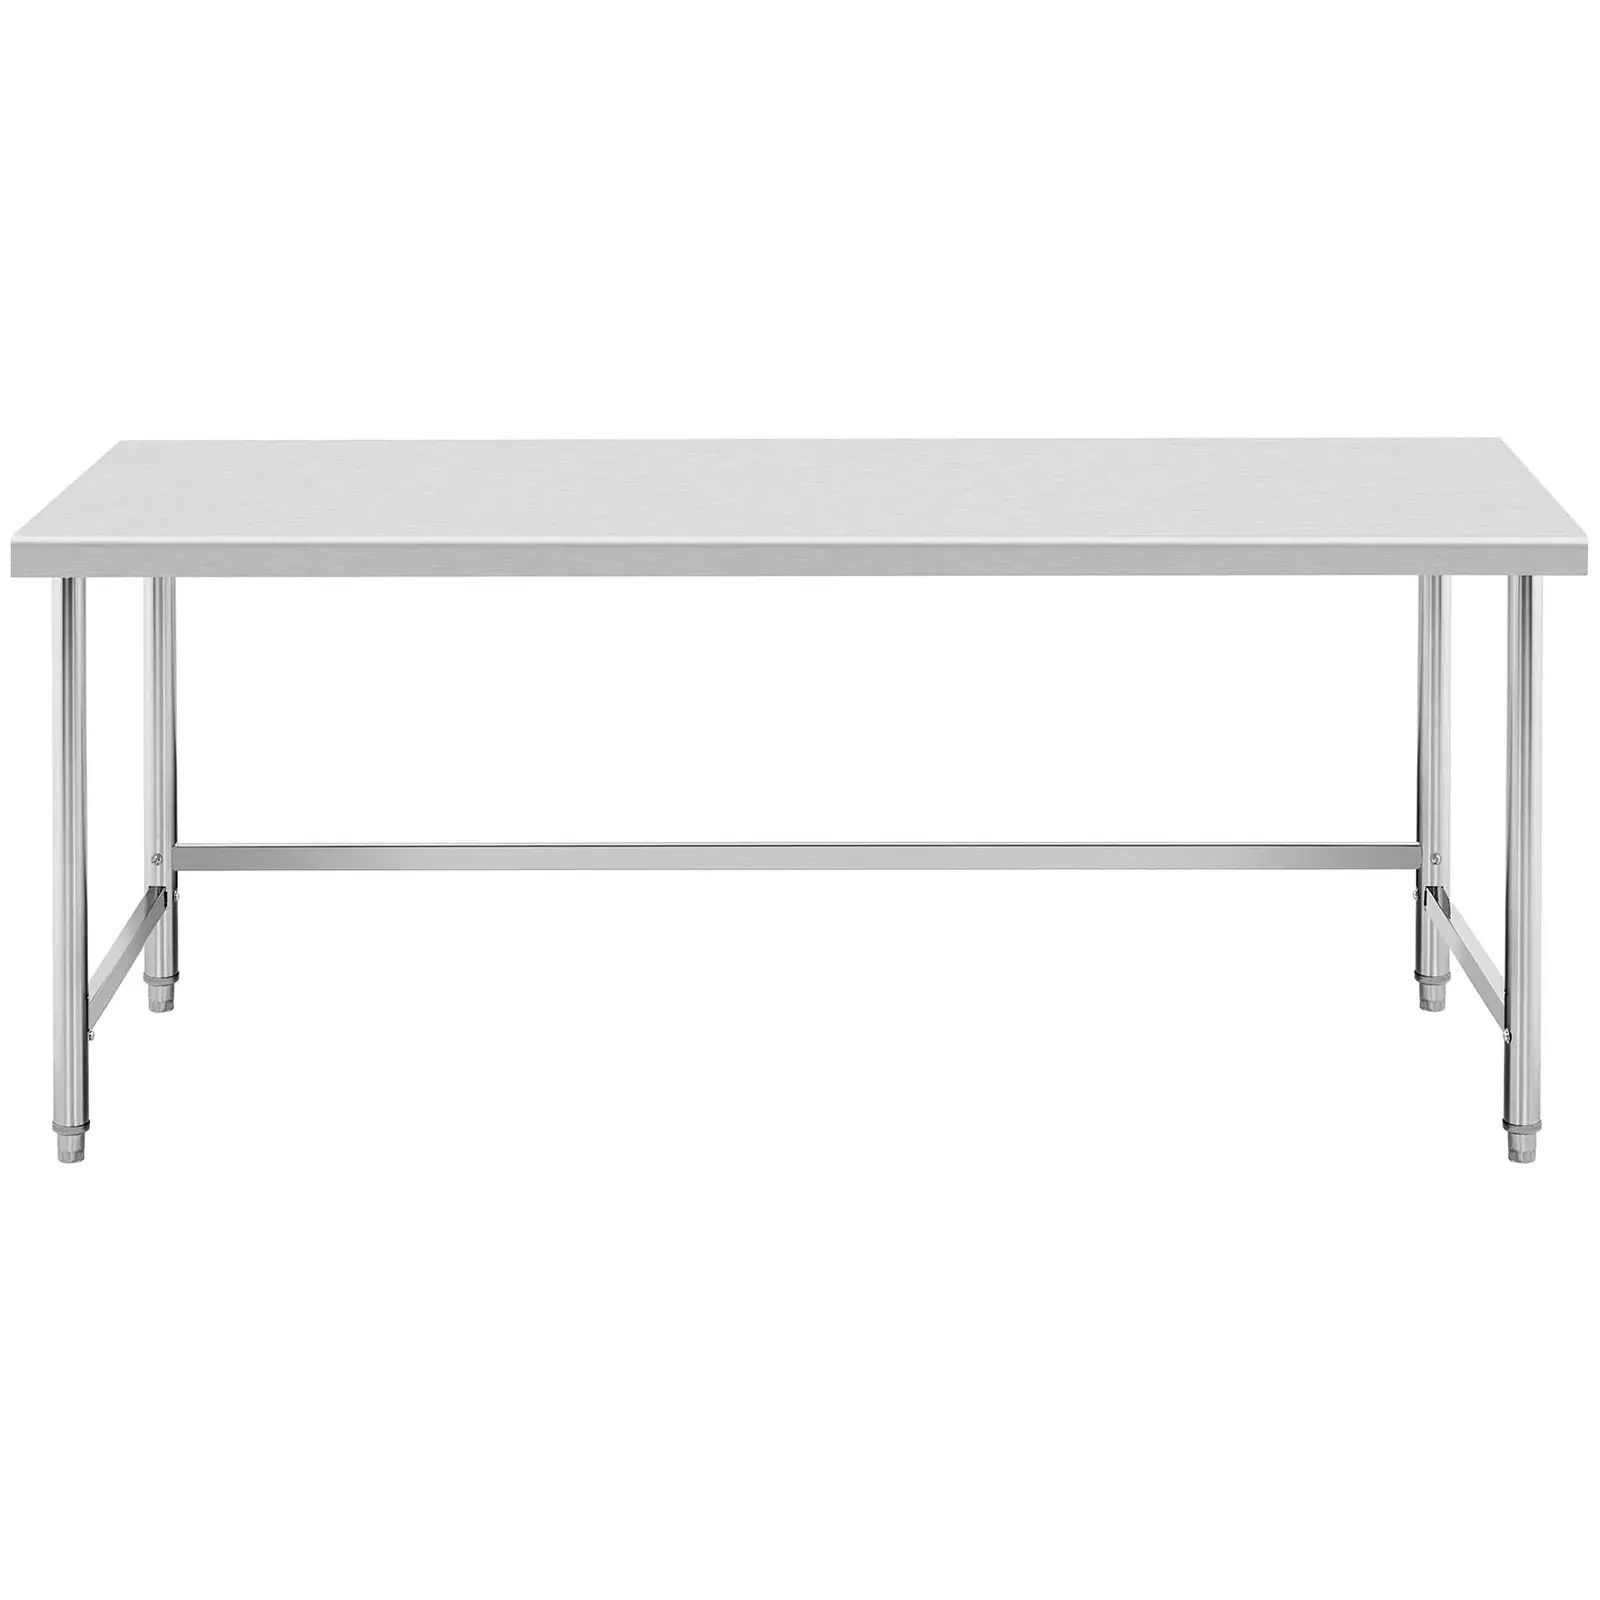 Pracovní stůl z ušlechtilé oceli - 200 x 60 cm - nosnost 95 kg - Royal Catering